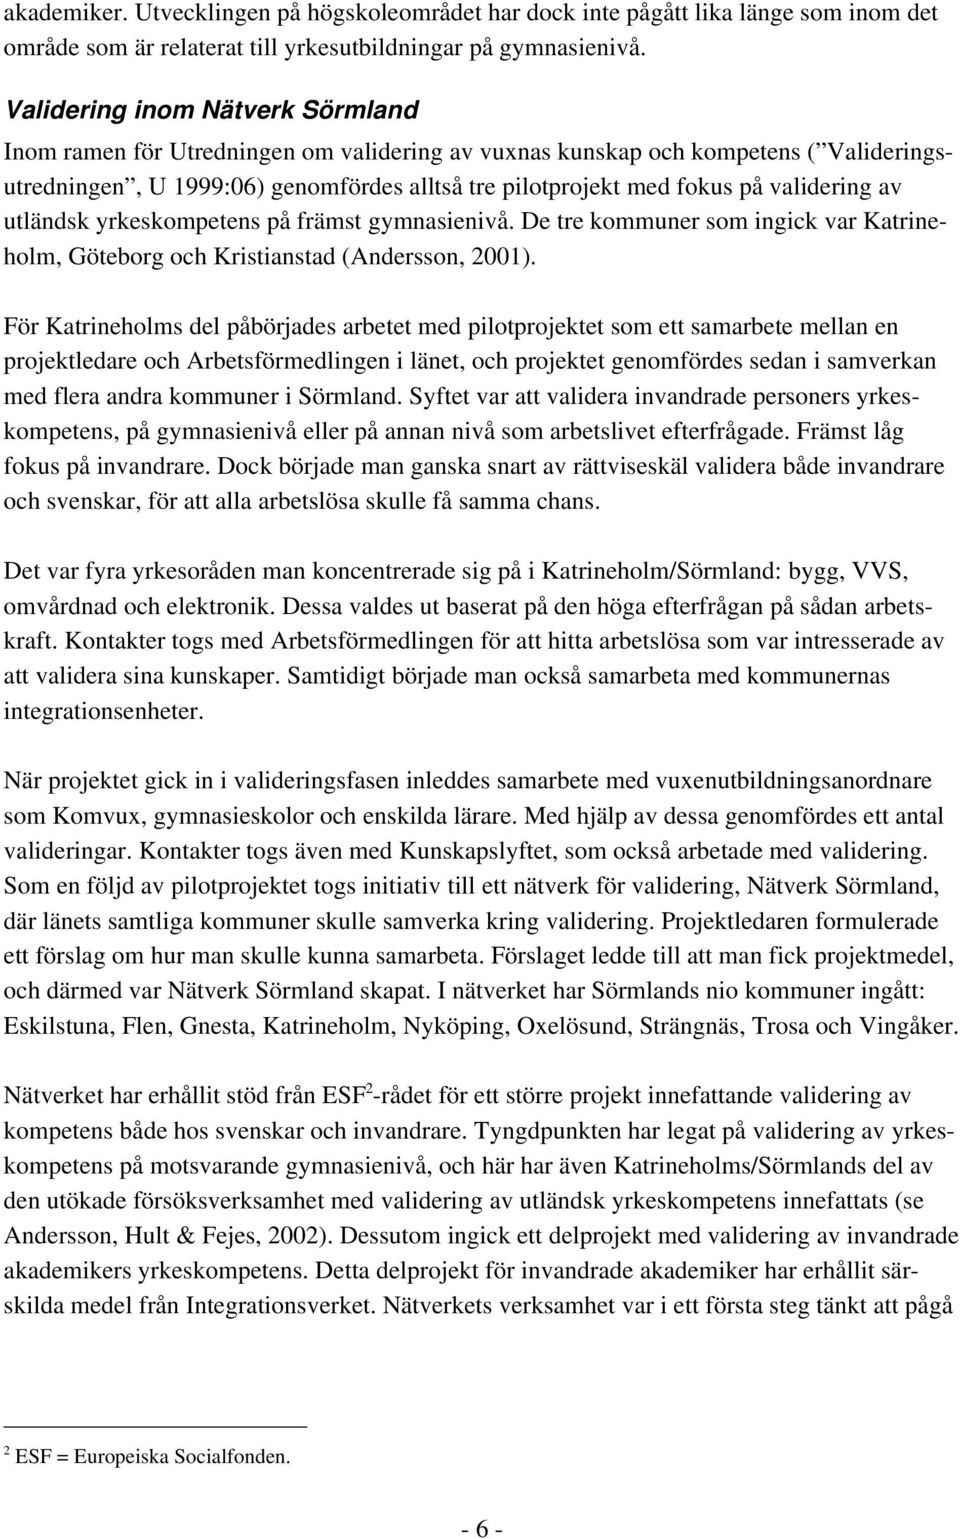 validering av utländsk yrkeskompetens på främst gymnasienivå. De tre kommuner som ingick var Katrineholm, Göteborg och Kristianstad (Andersson, 2001).